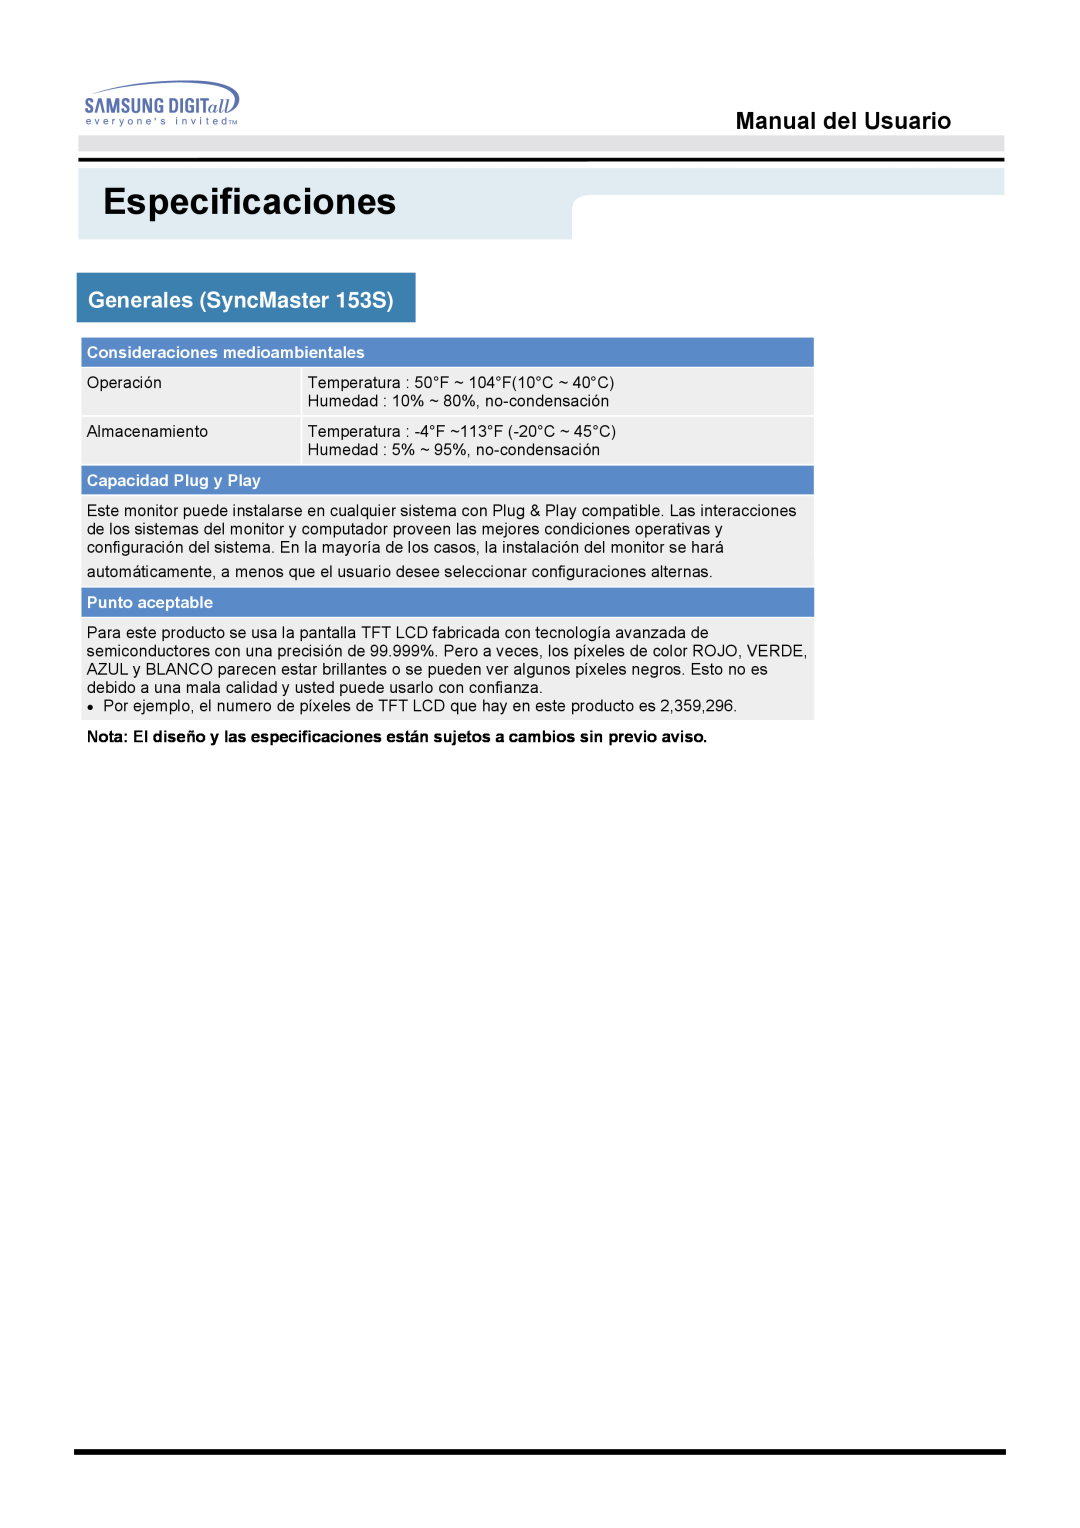 Samsung manual Especificaciones, Manual del Usuario, Generales SyncMaster 153S, Consideraciones medioambientales 